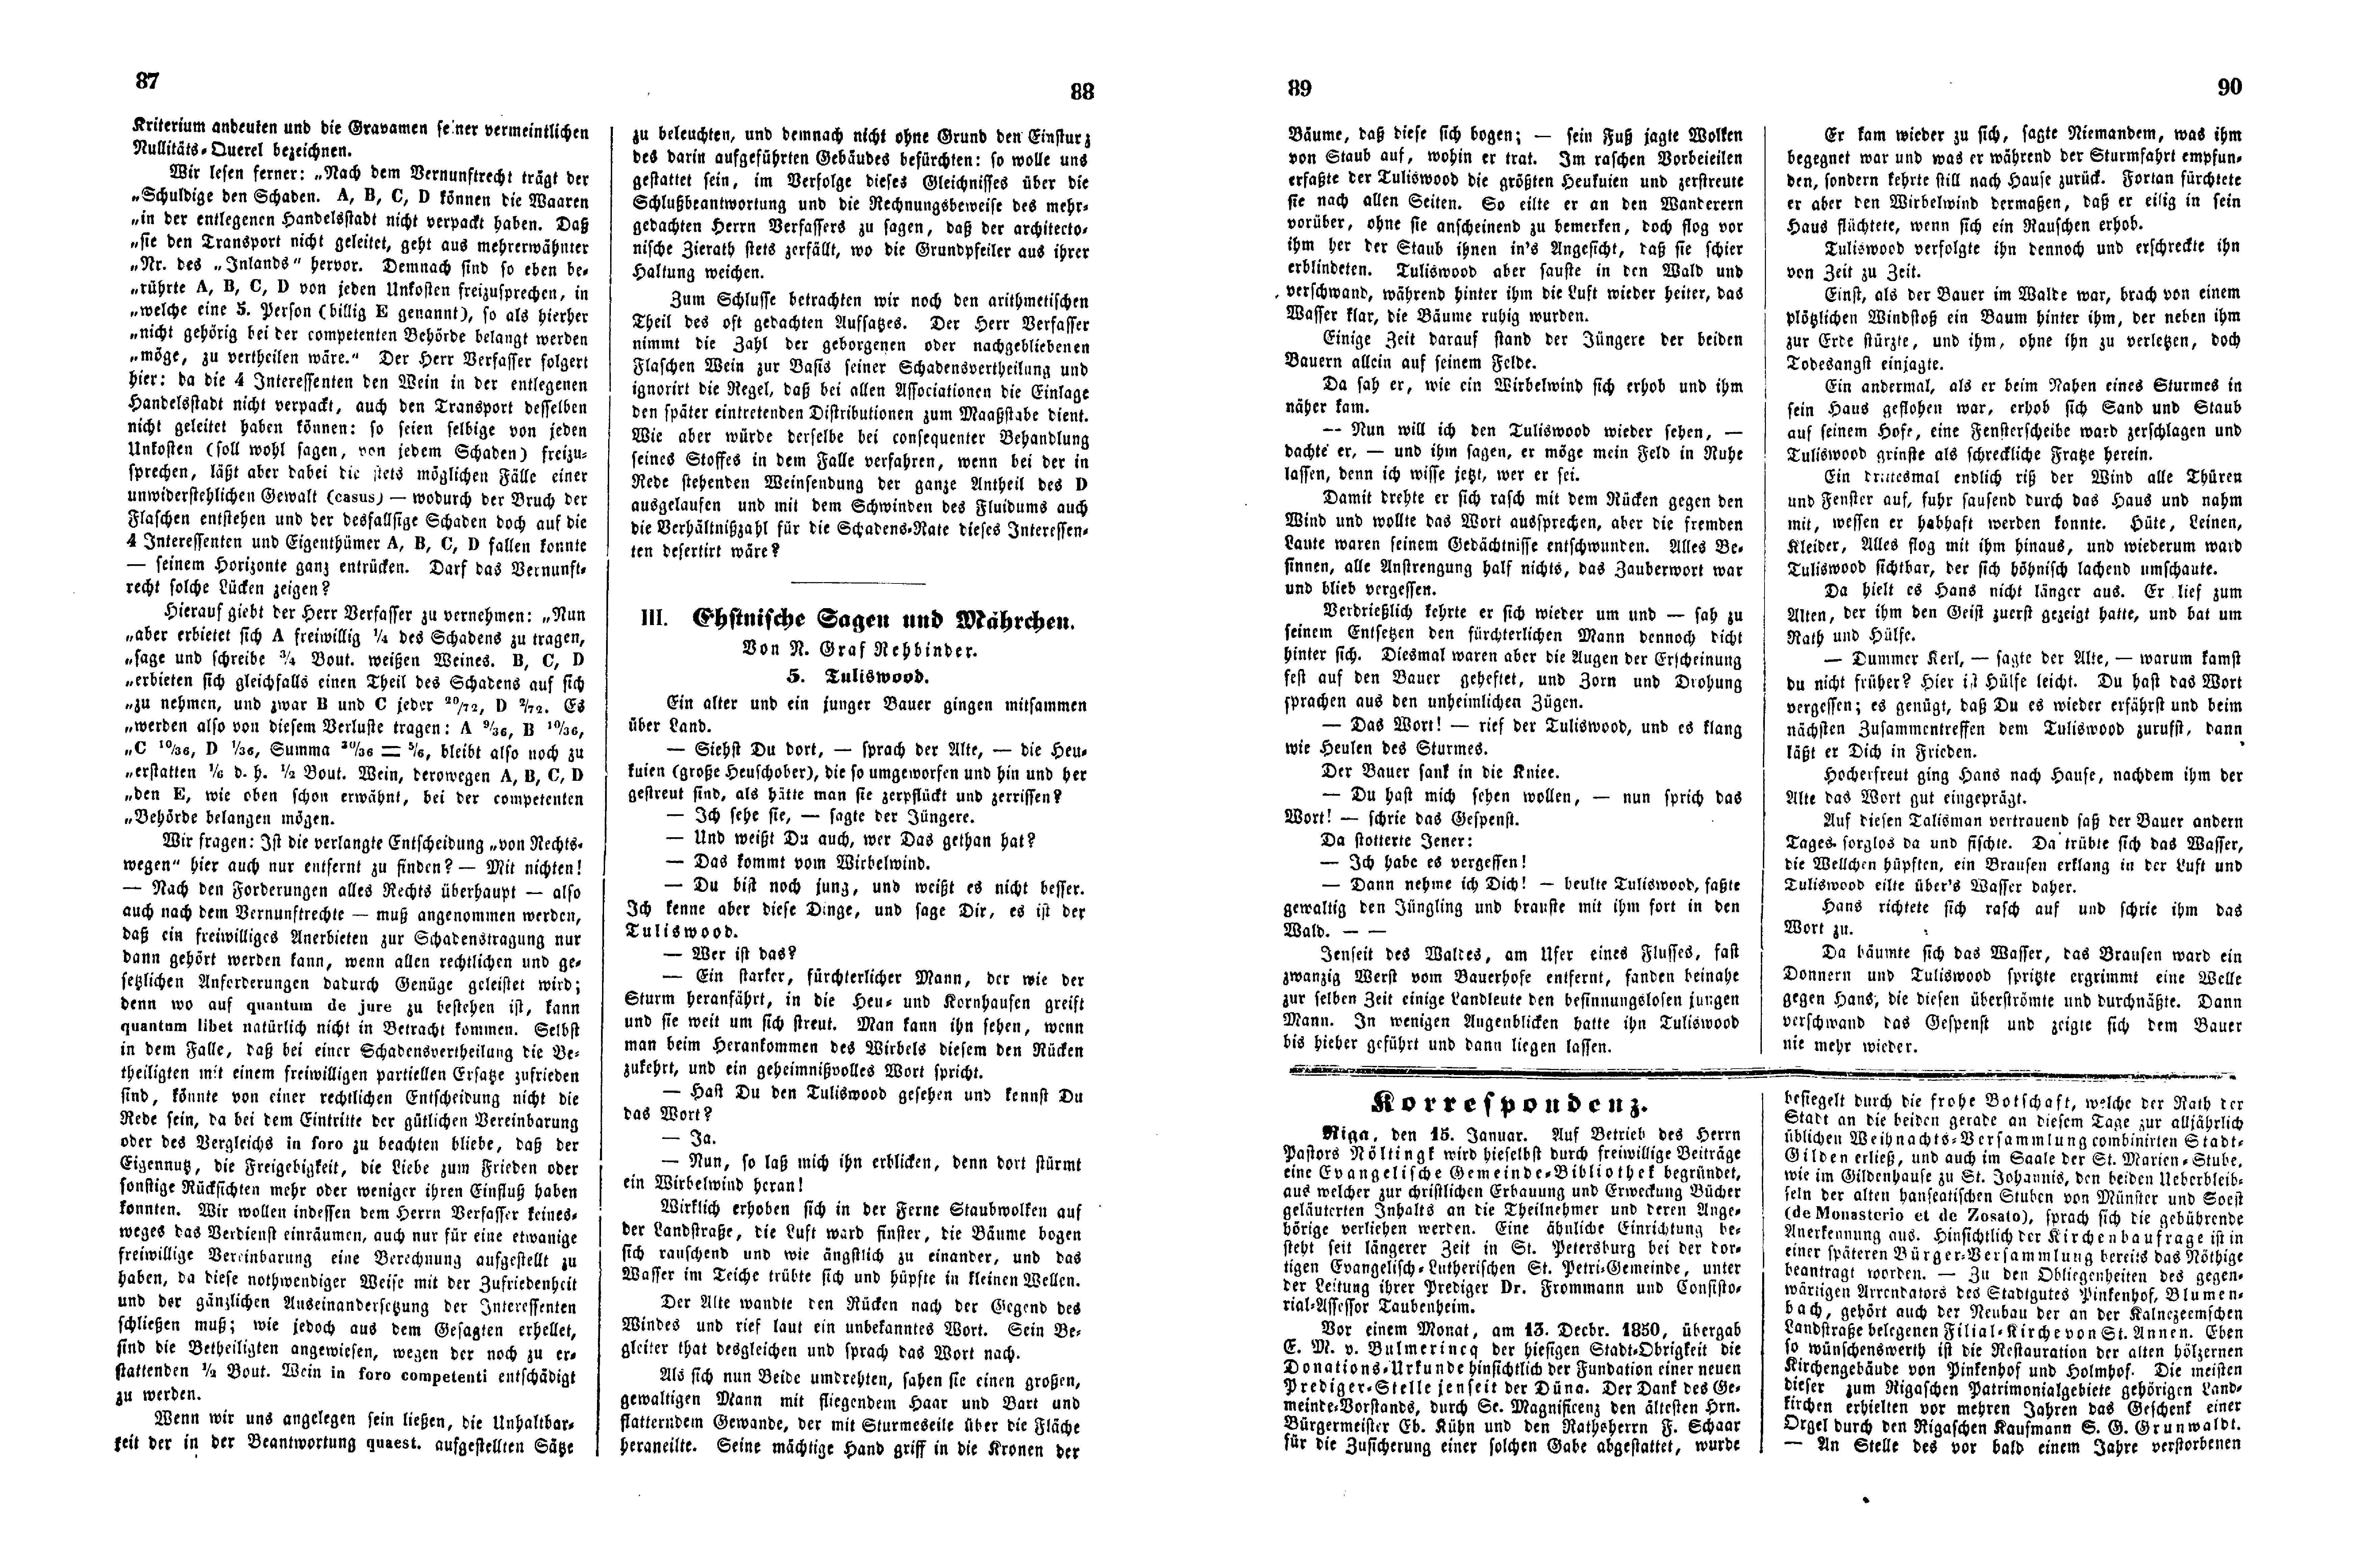 Tuliswood (Ehstnische Sagen und Mährchen) (1851) | 1. (87-90) Haupttext